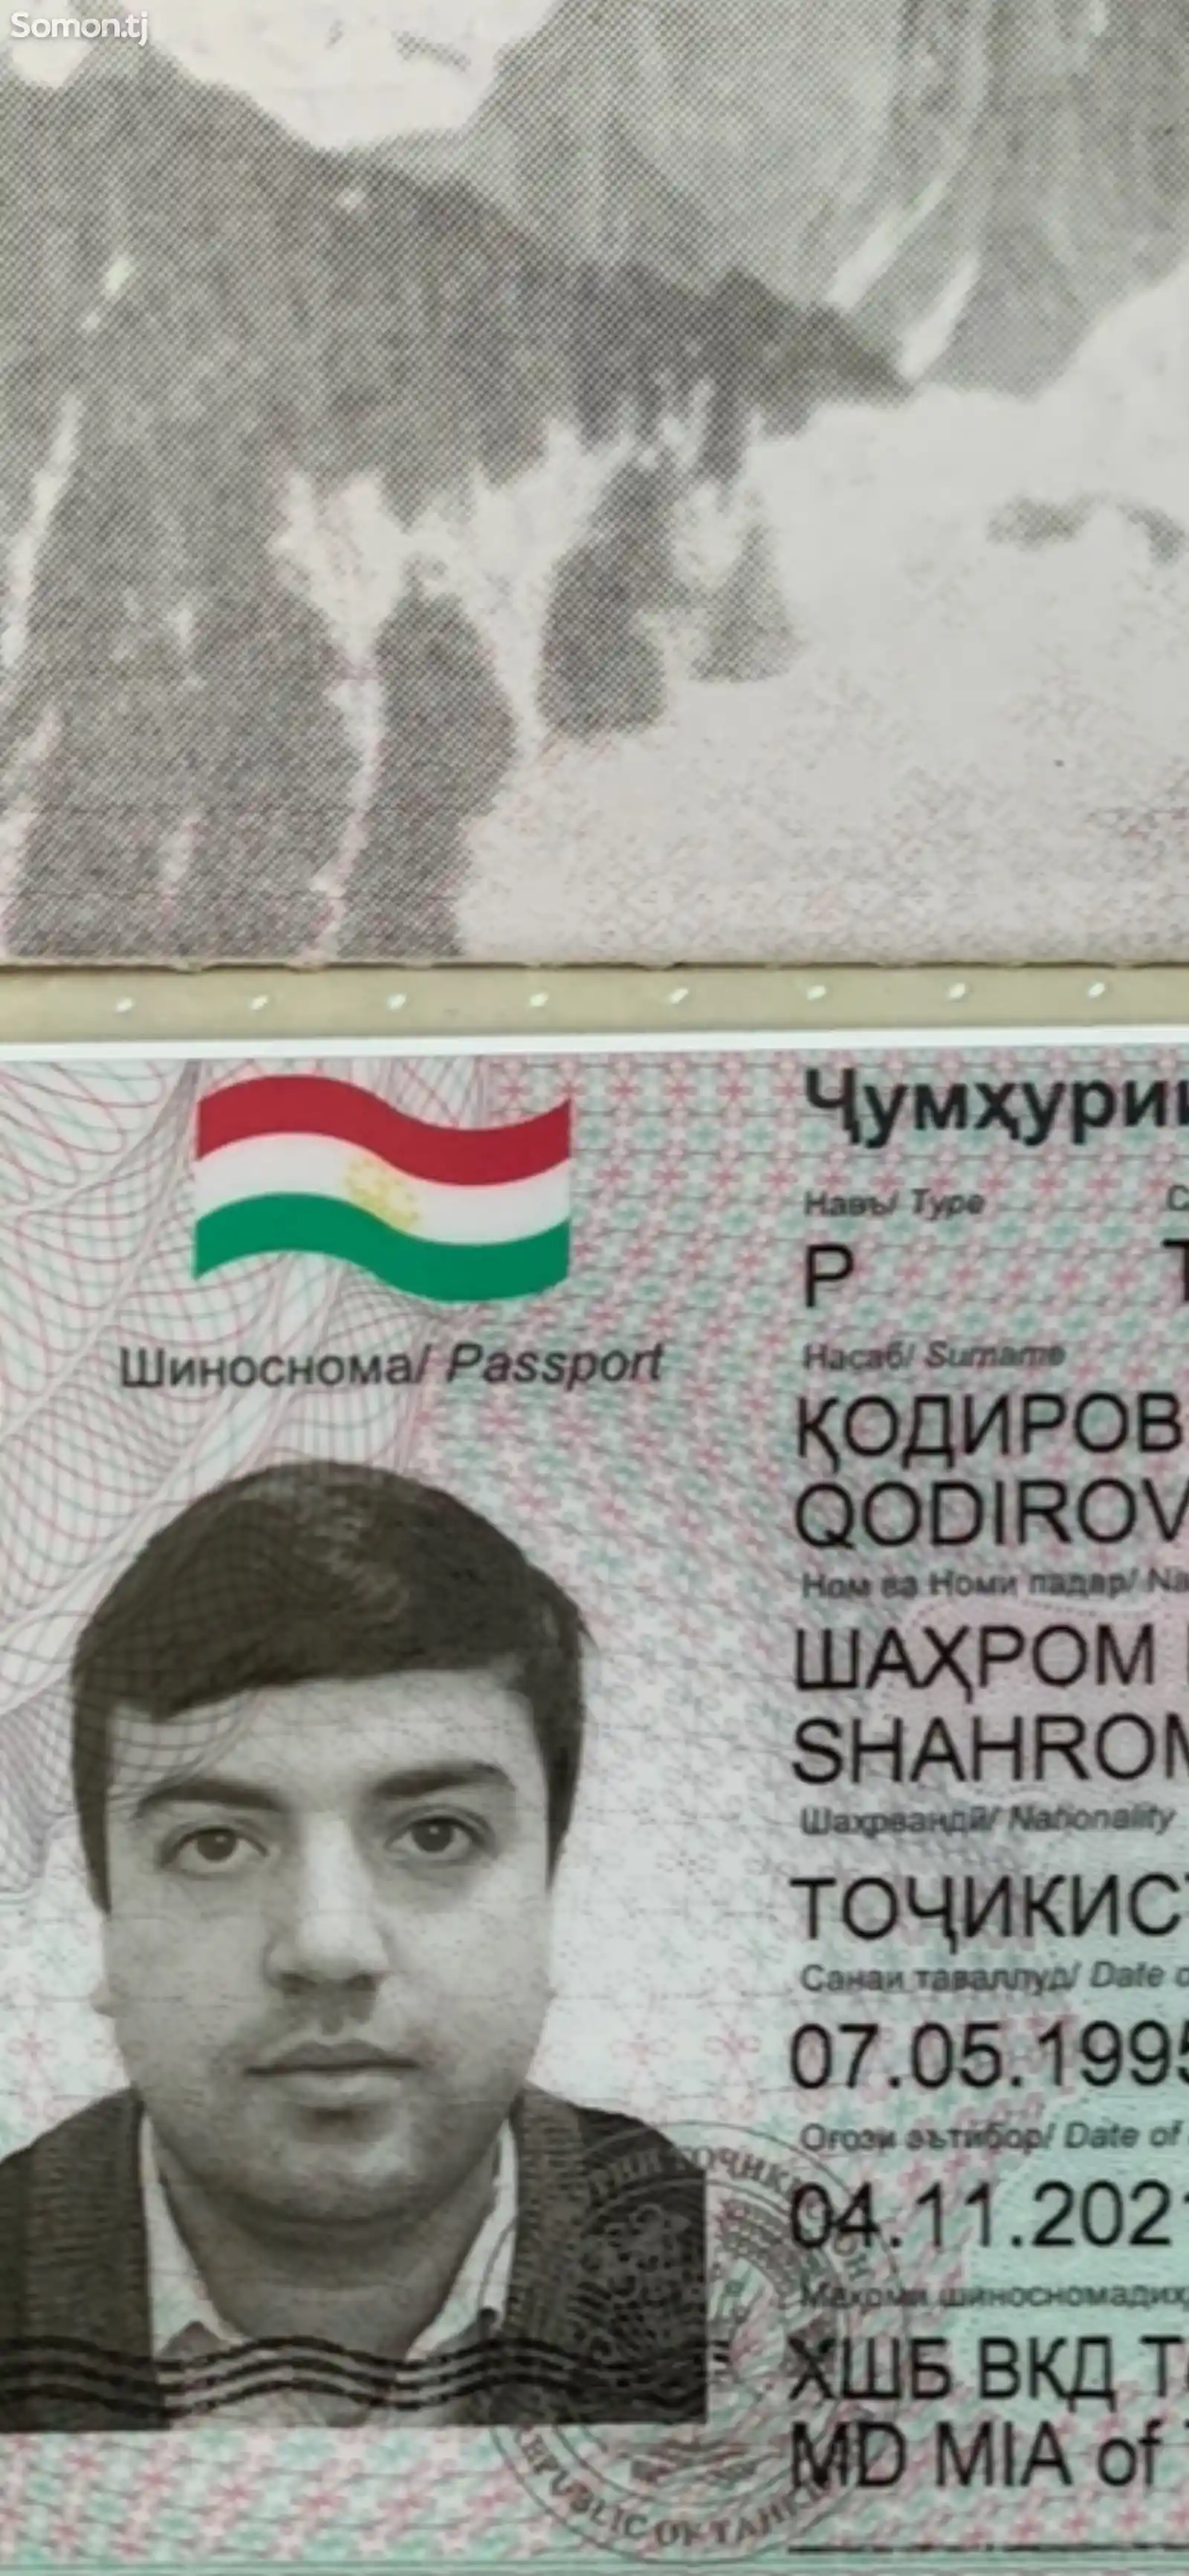 Найден паспорт на имя Кодиров Шахром